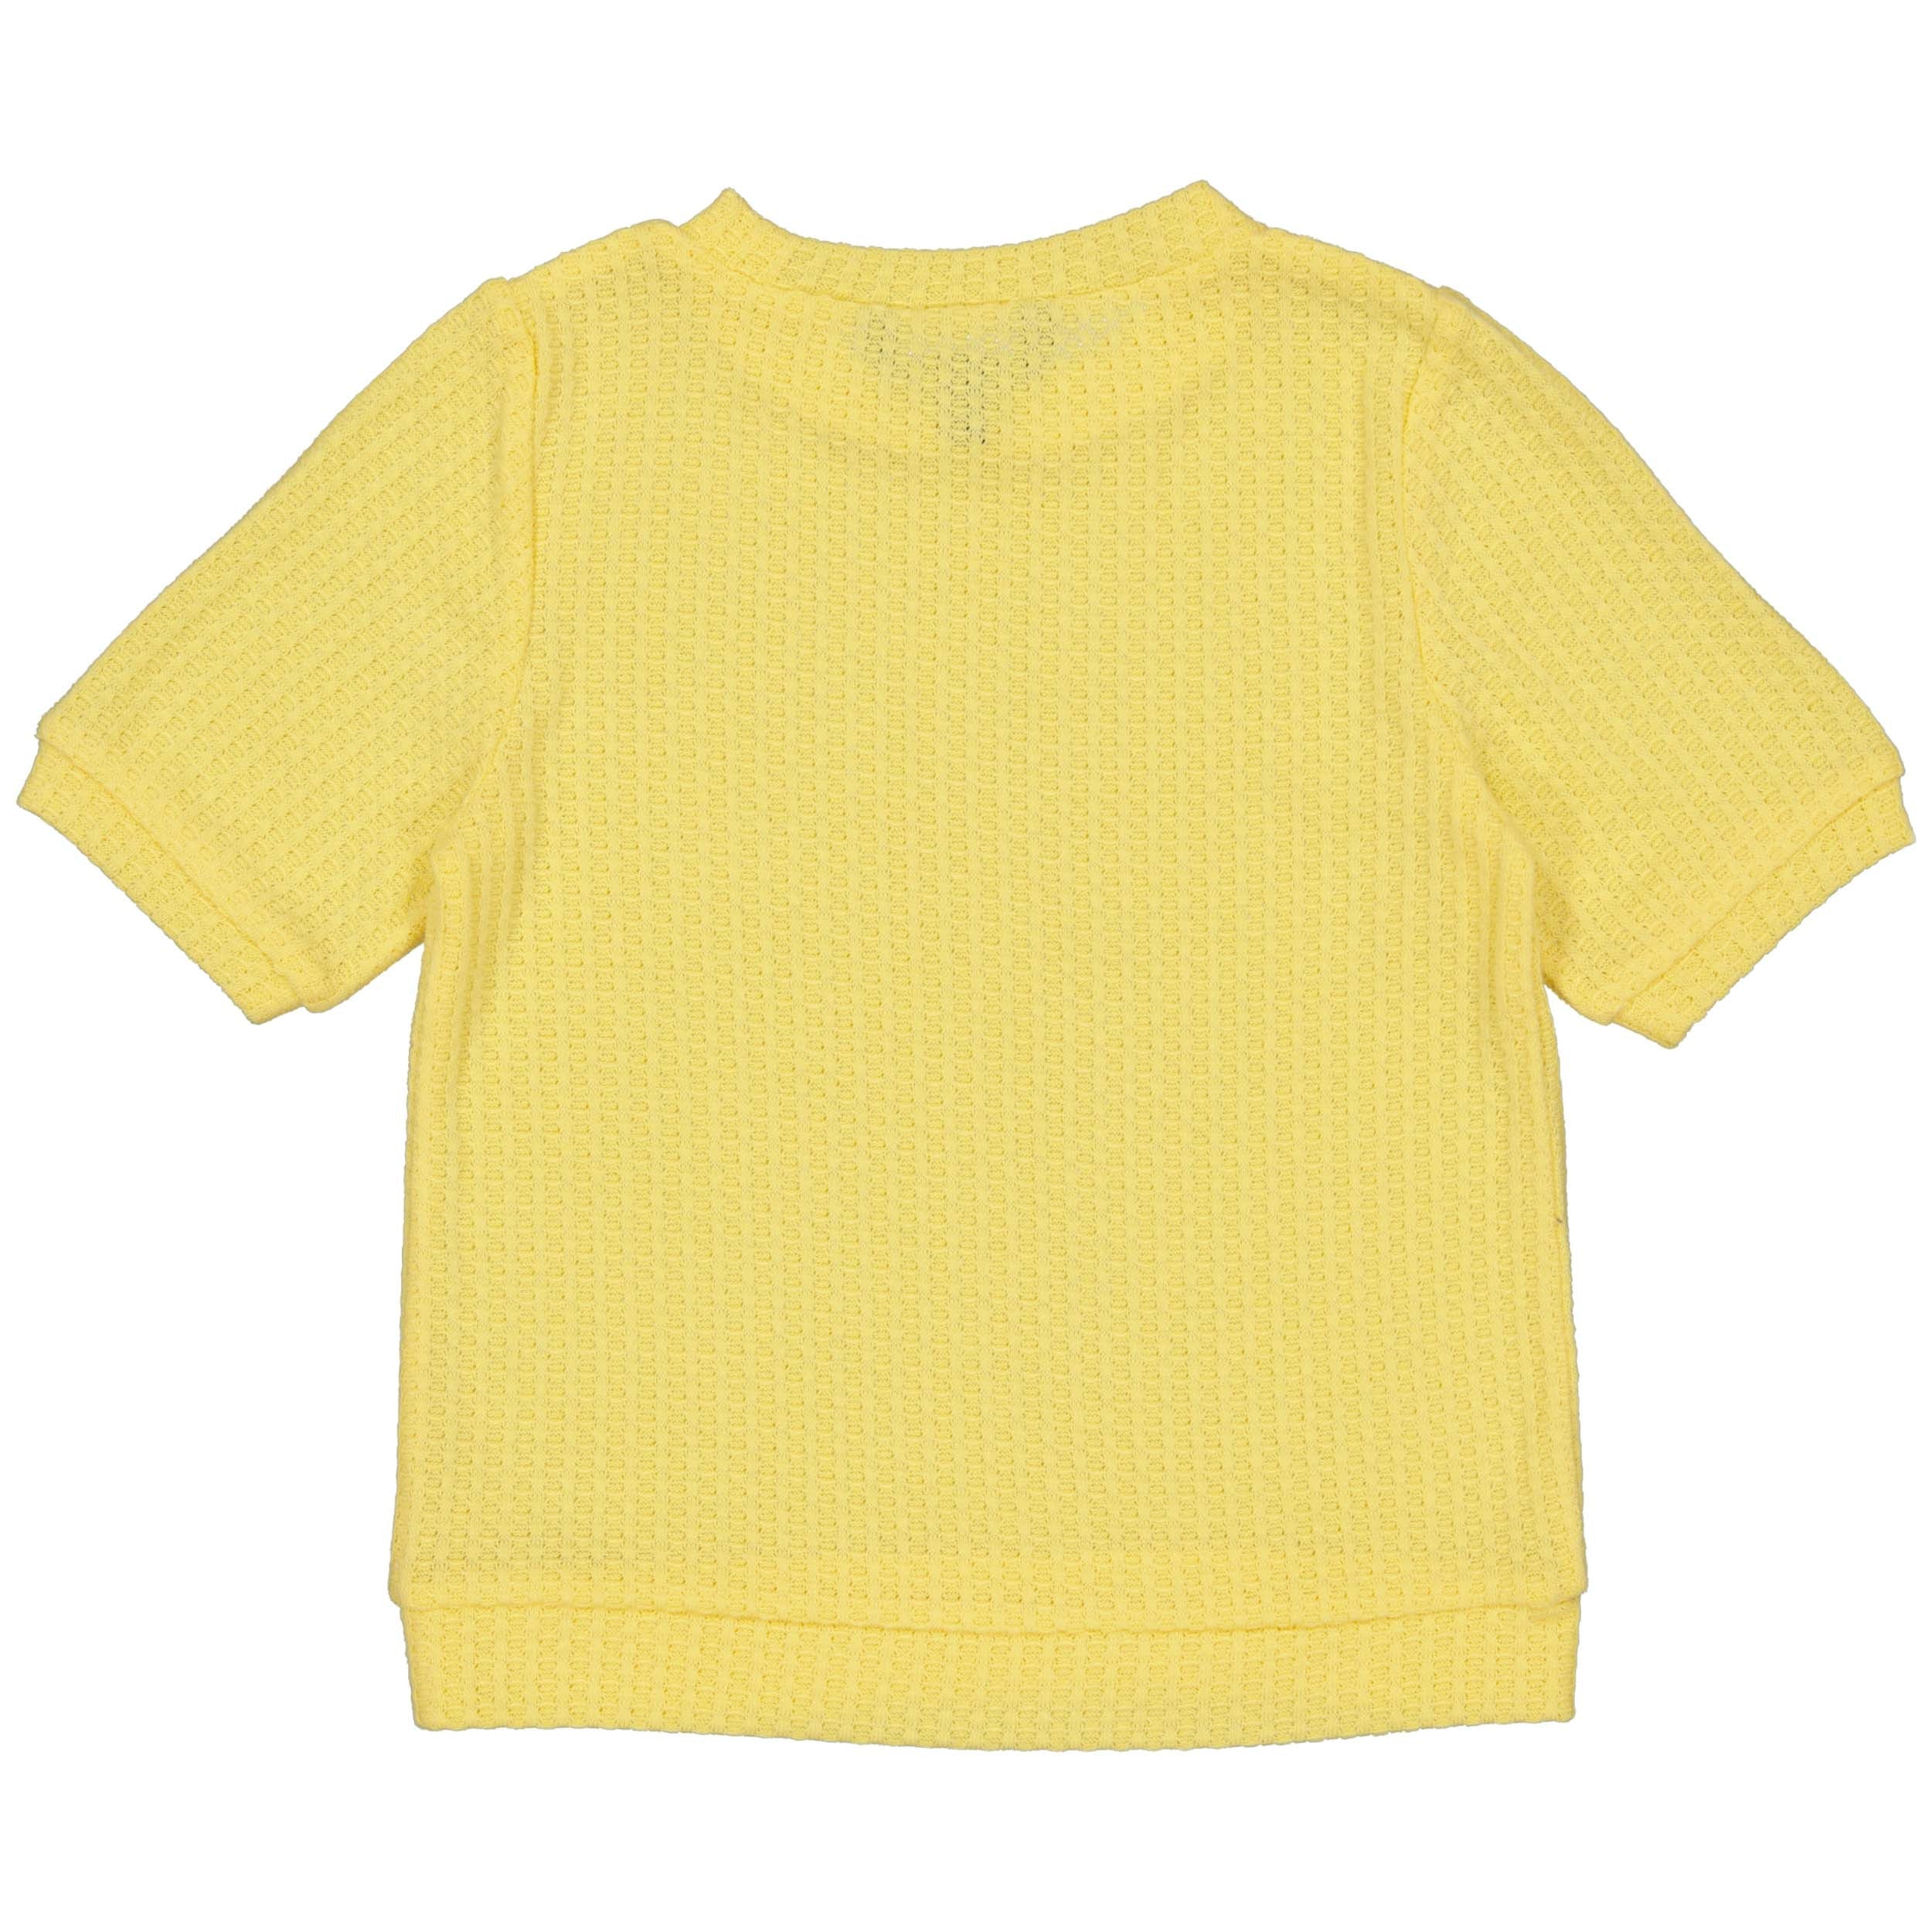 Meisjes Knitted top BONITAQS243 van Quapi in de kleur Soft Yellow in maat 122-128.